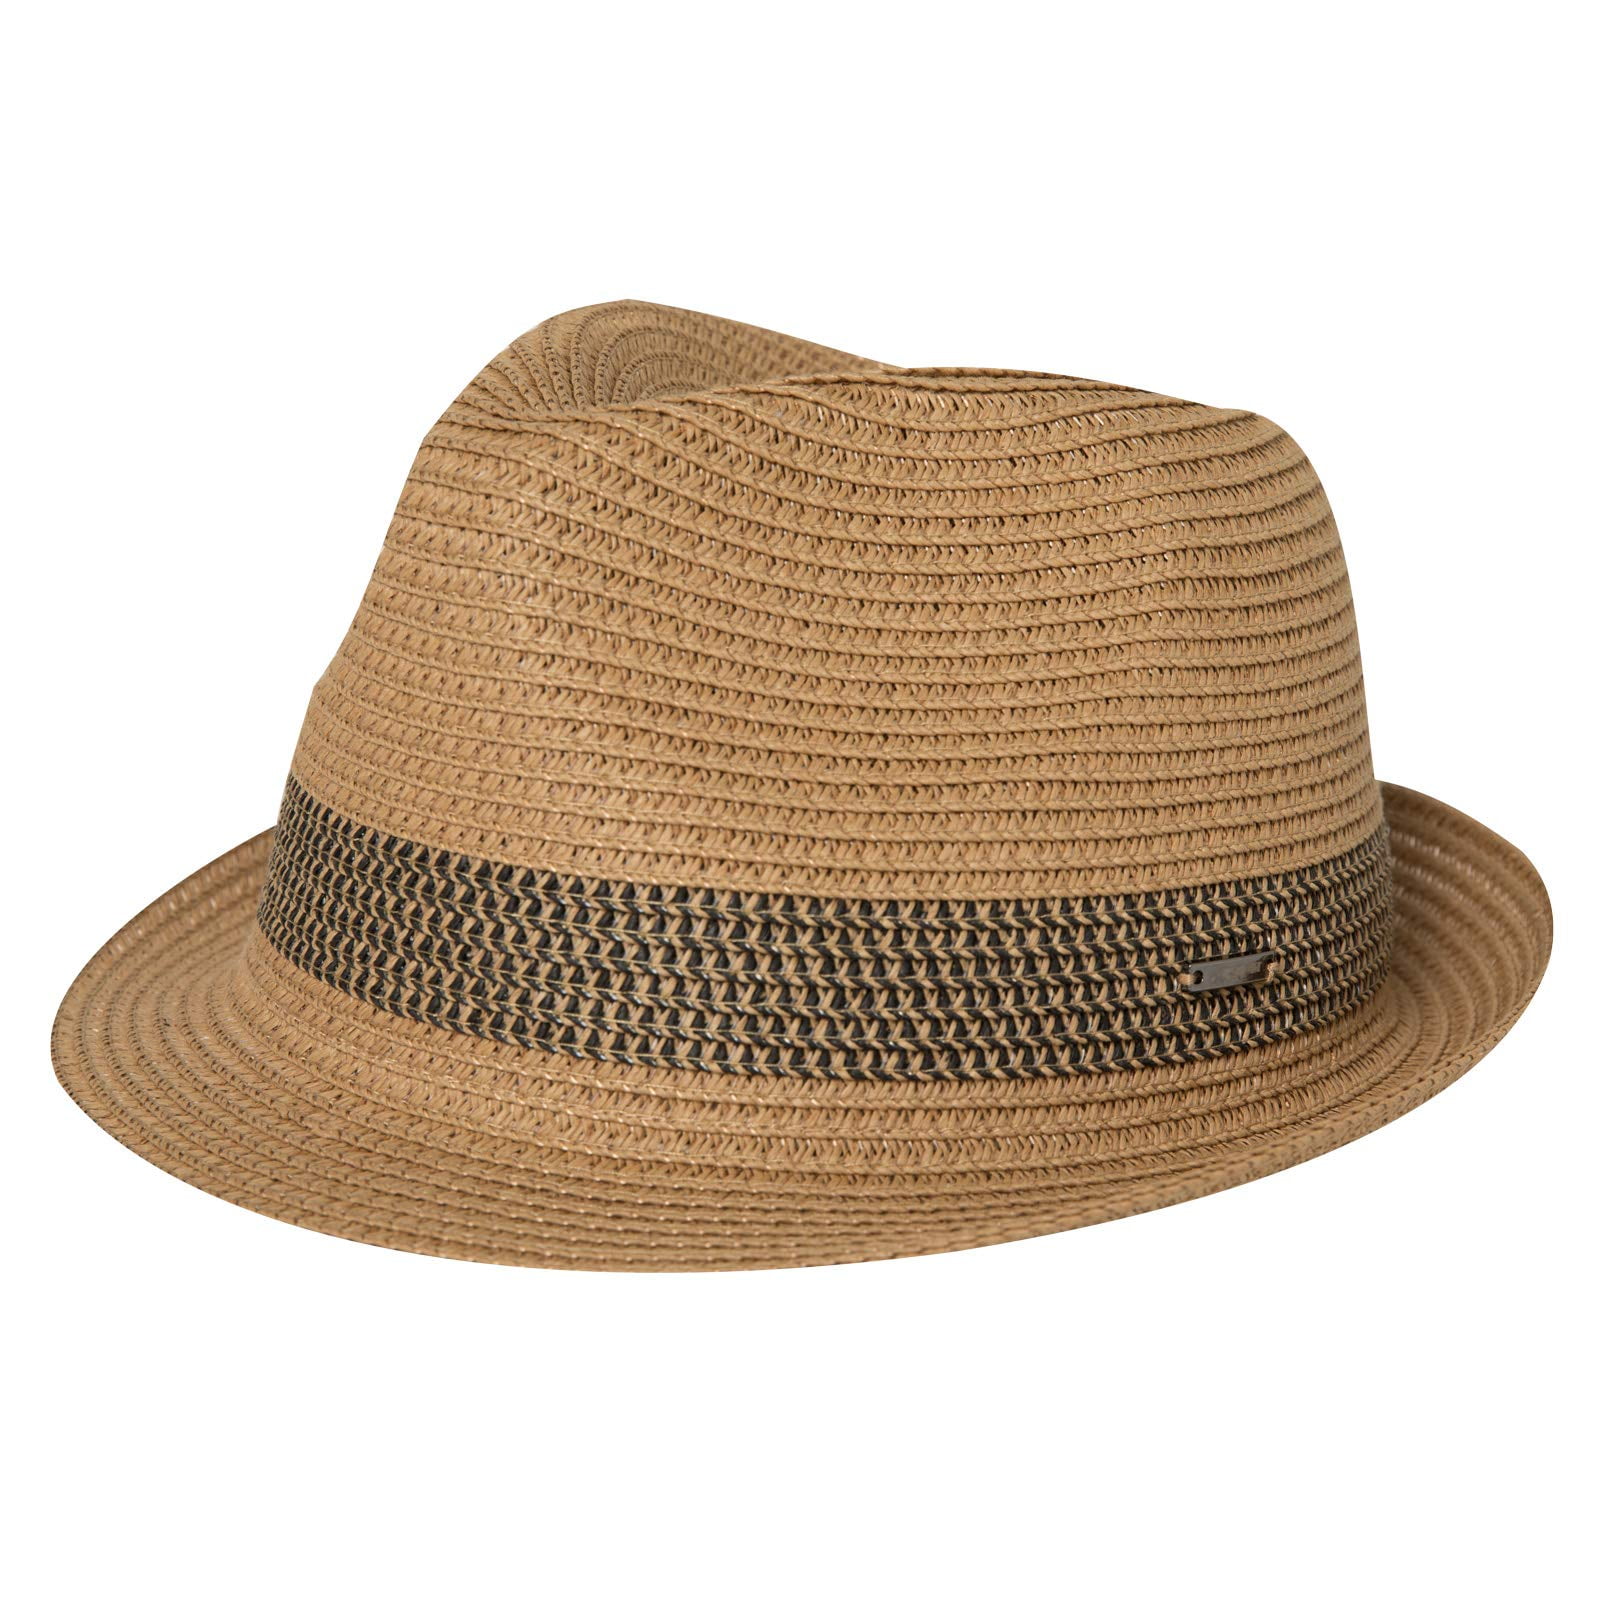 Fancet Packable Straw Fedora Panama Sun Summer Beach Hat Cuban Trilby Men Women 55-64cm 